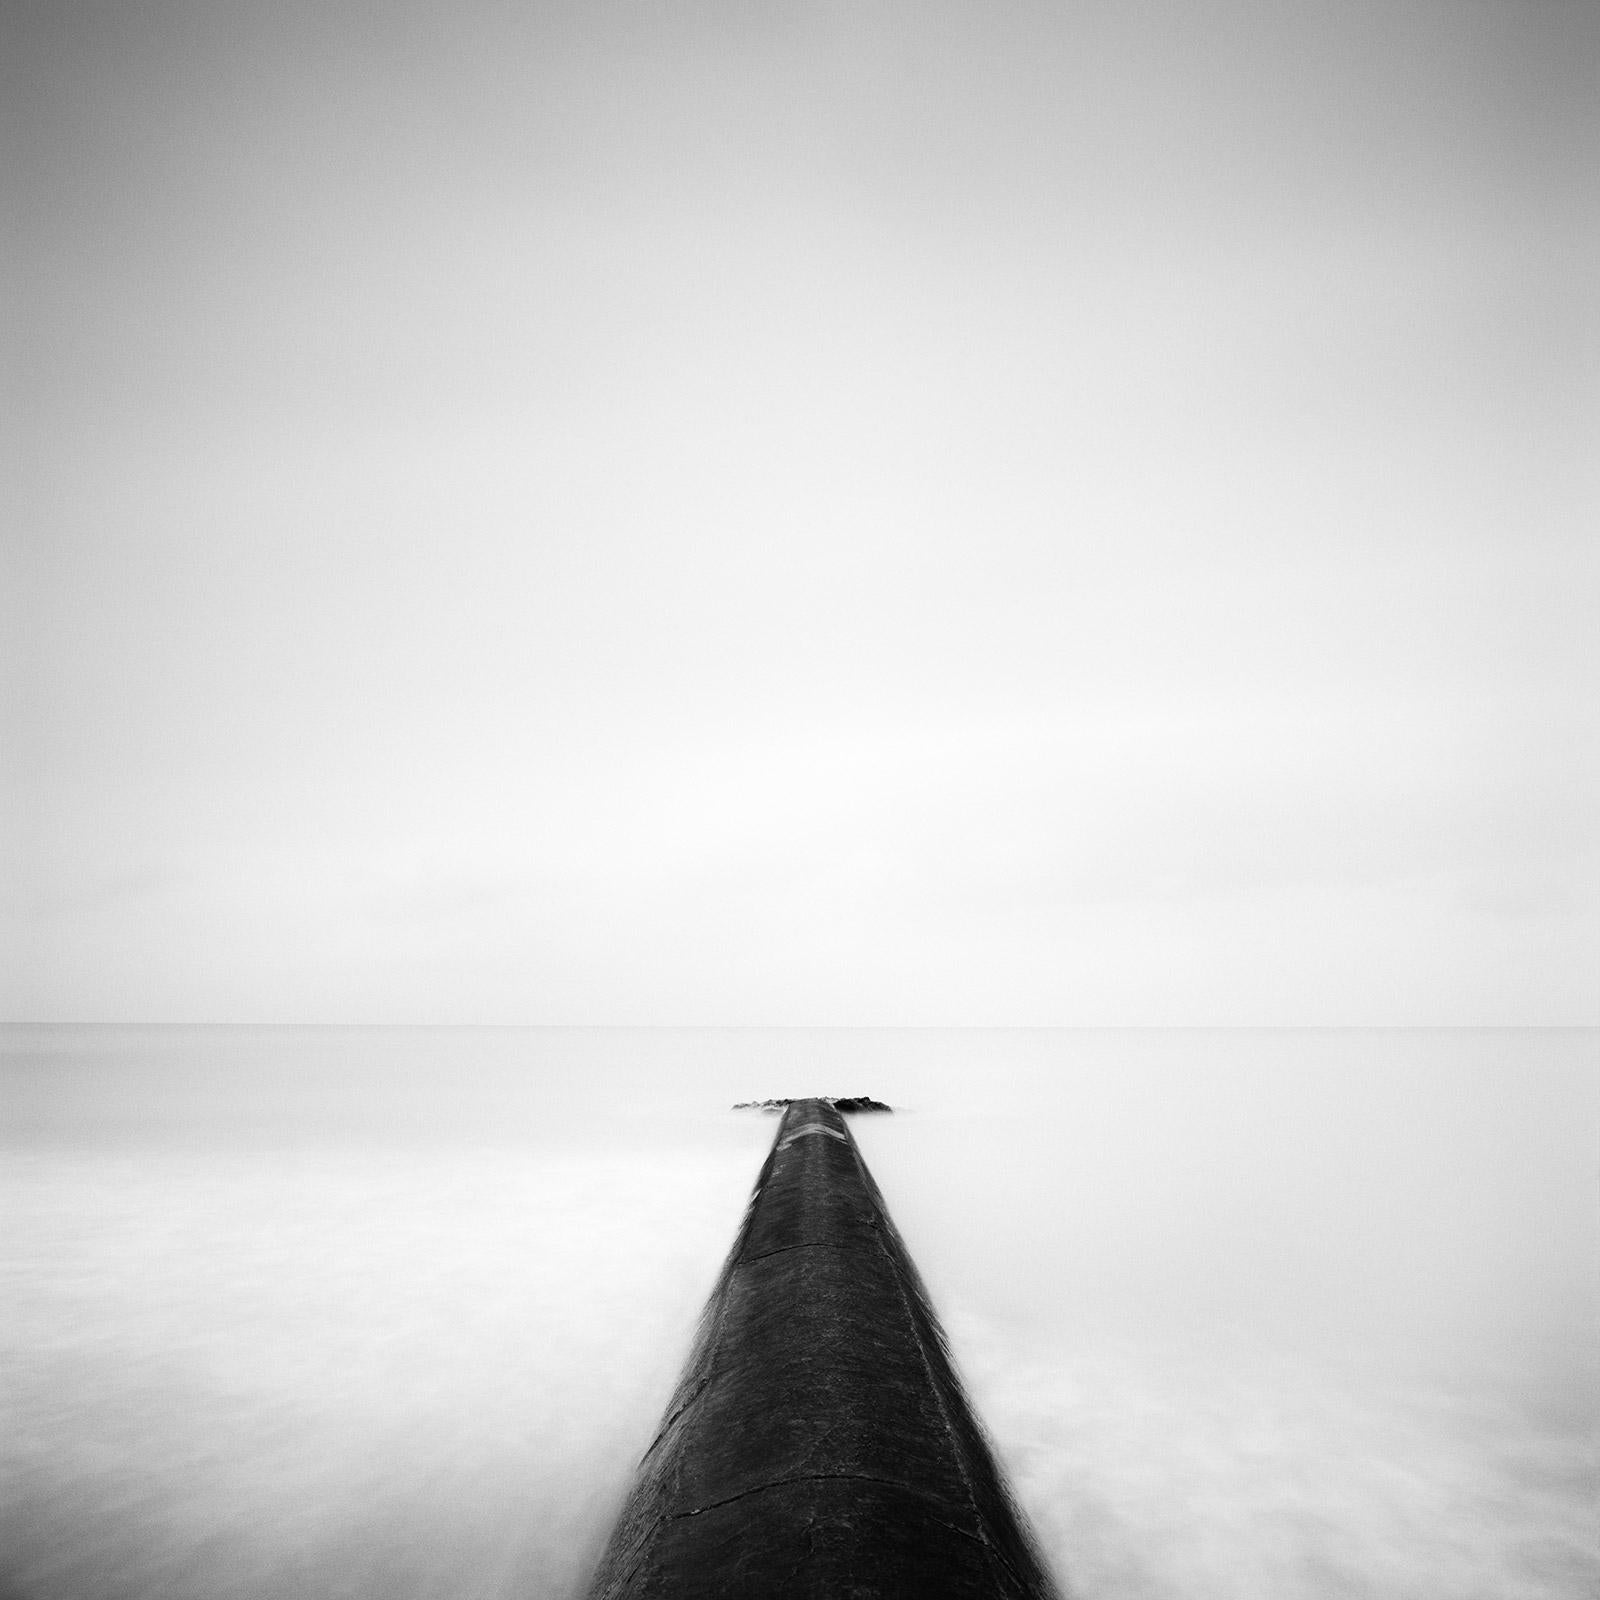 Landscape Photograph Gerald Berghammer - Straight on, Pier, Ozean, Normandie, France, photographie en noir et blanc, paysage